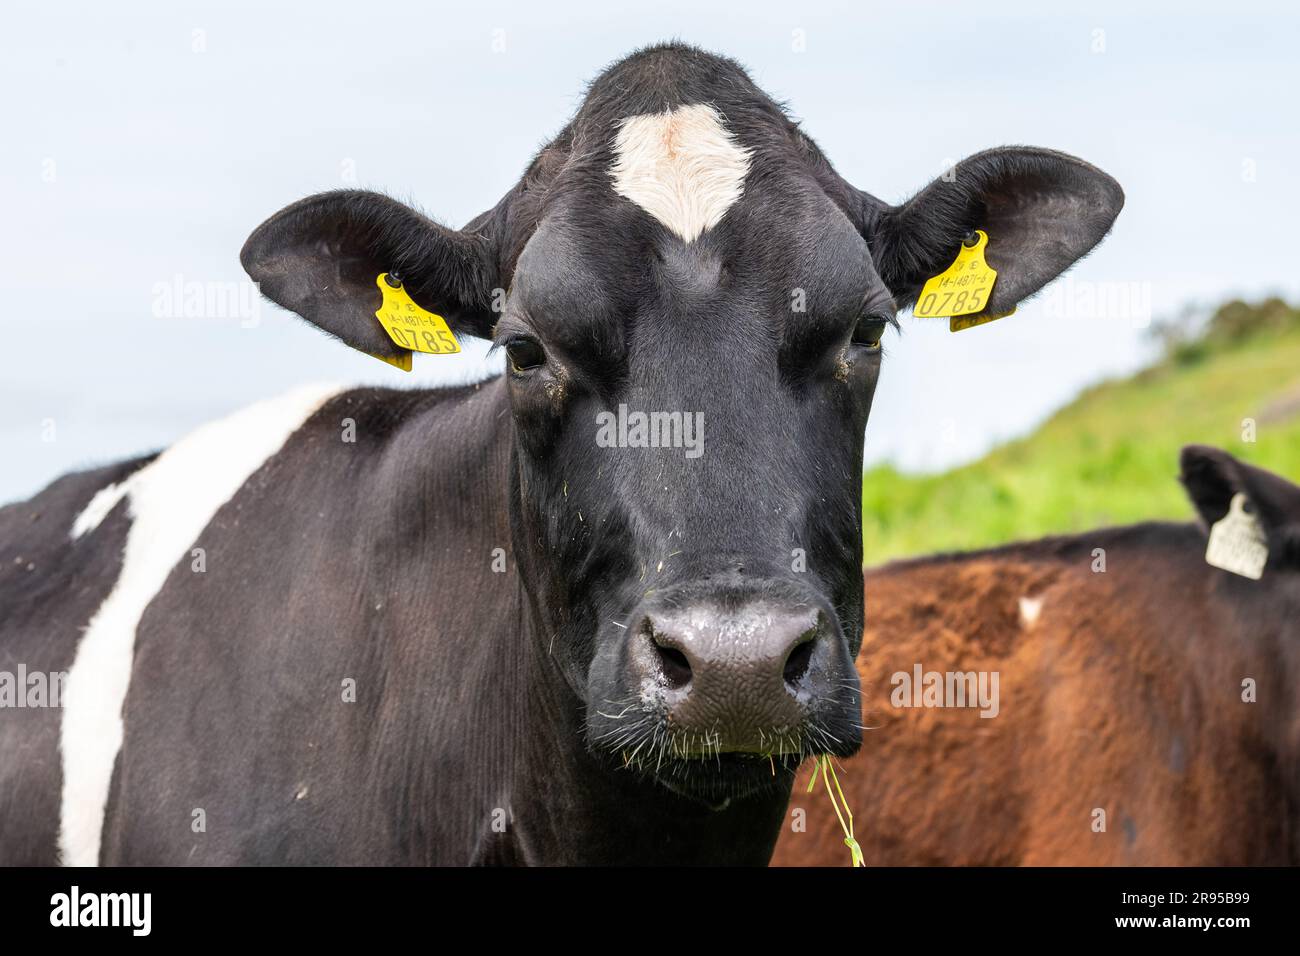 Eine Milchkuh mit einem Stück Gras im Mund starrt in die Kamera. Stockfoto